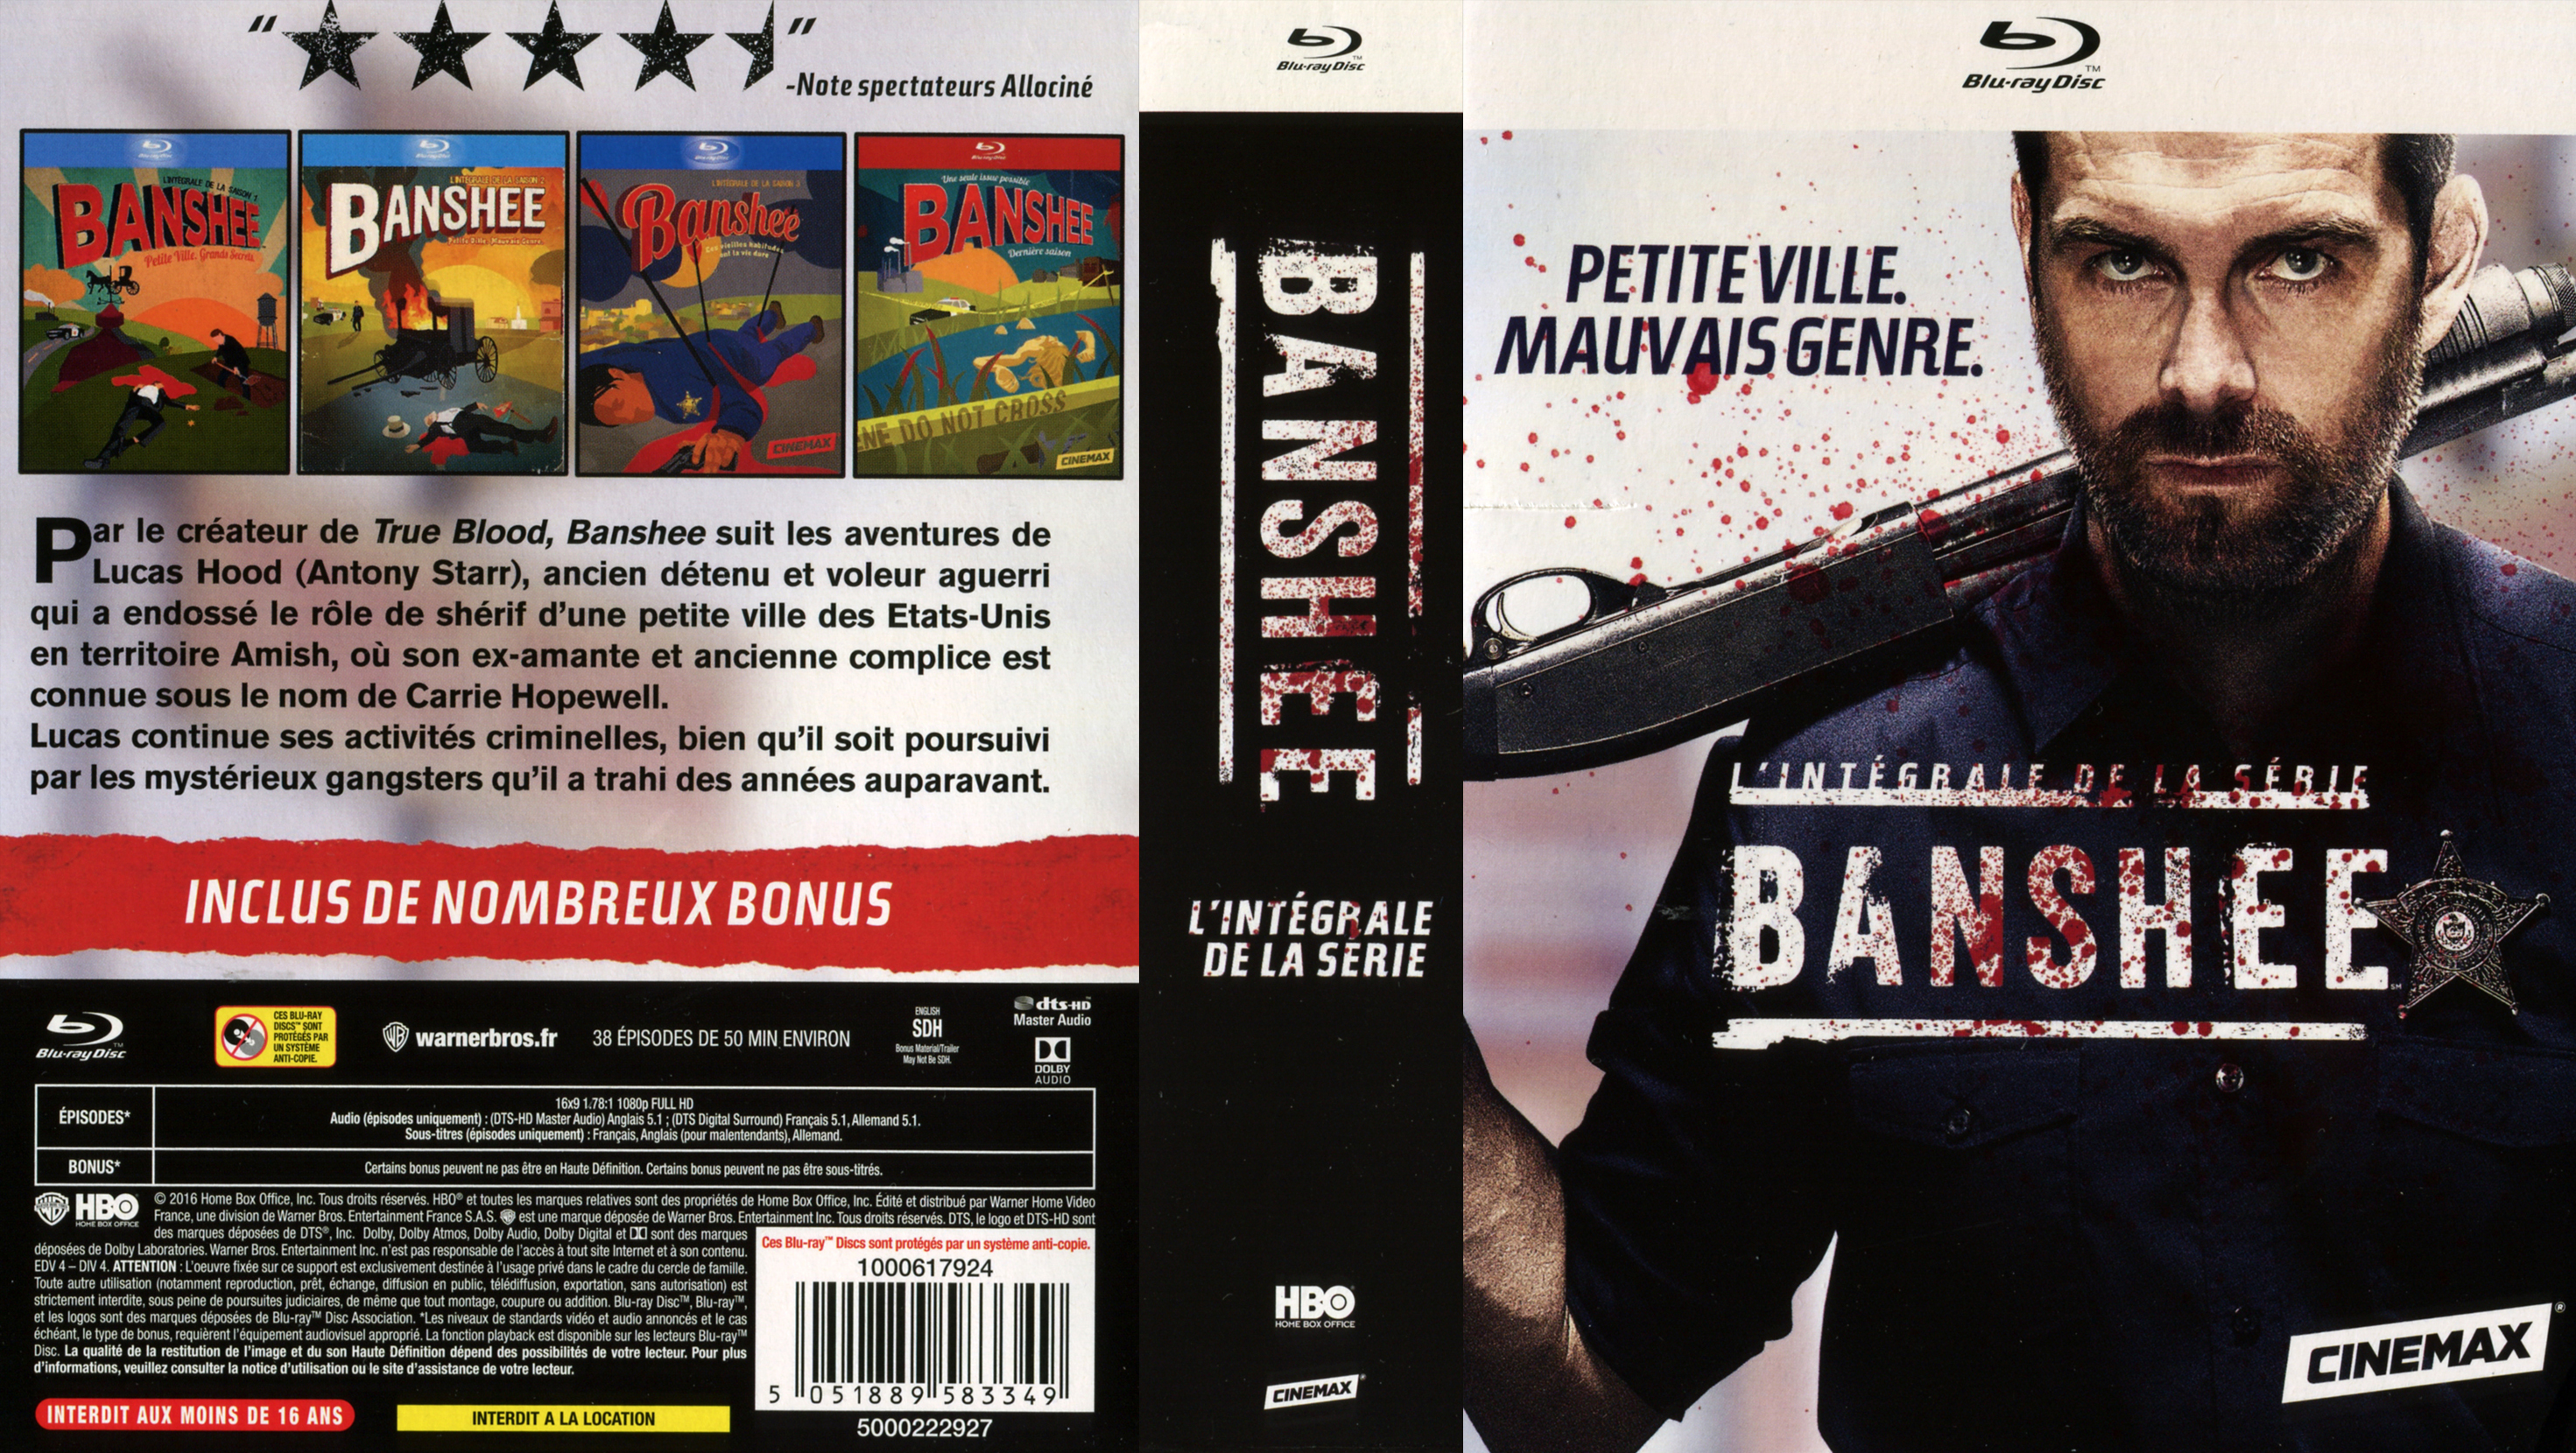 Jaquette DVD Banshee Intgrale COFFRET